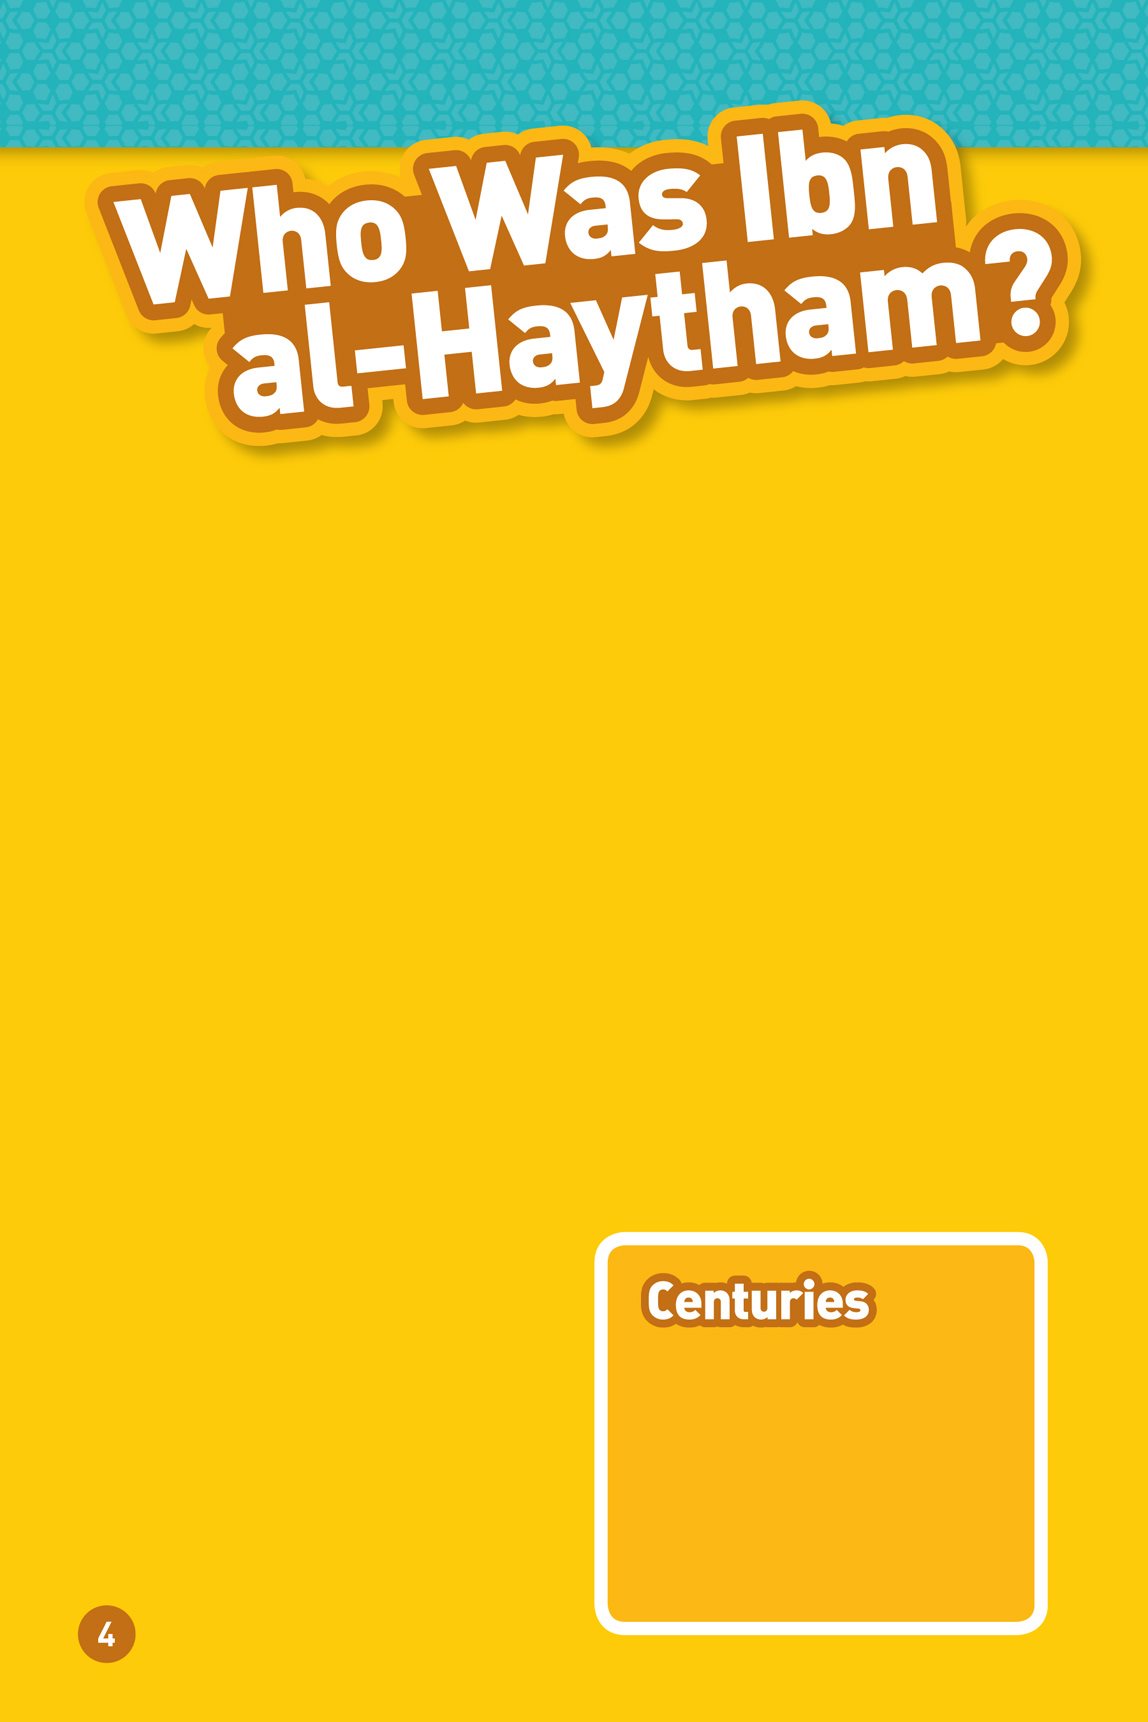 Al- Hasan Ibn al- Haytham al- HAS- un IB- un al- HAY- thum was an Arab - photo 6